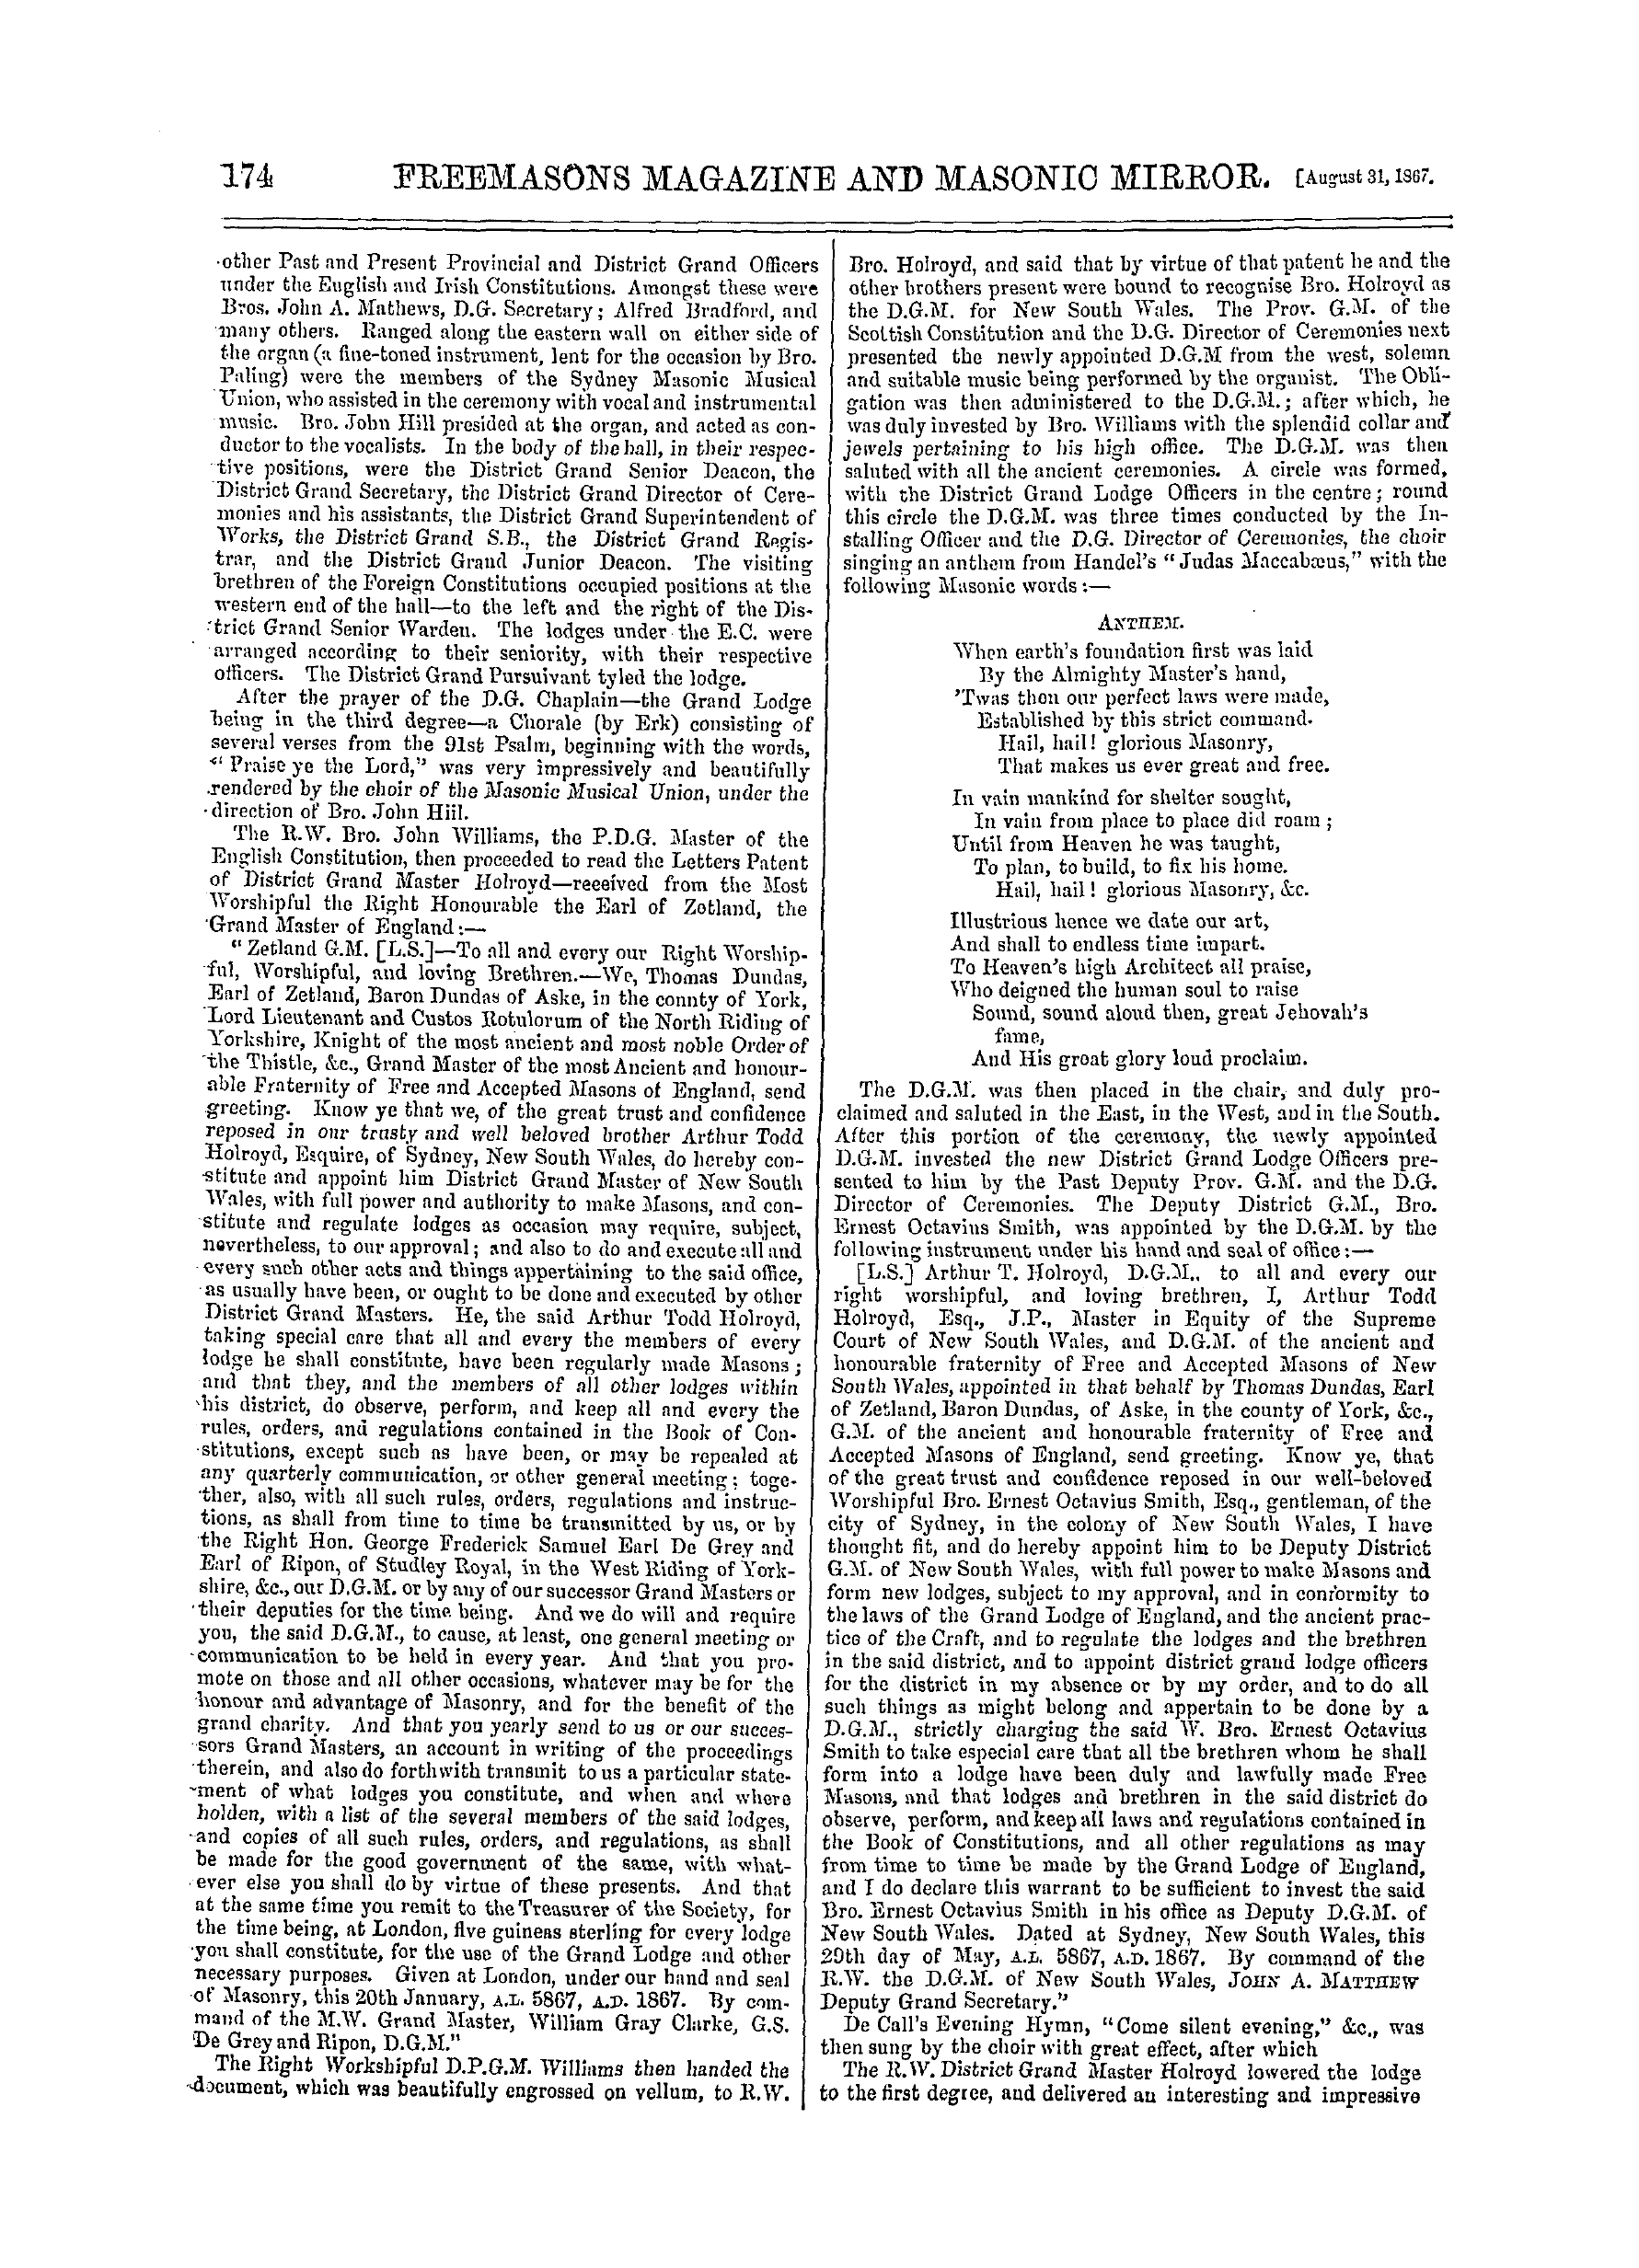 The Freemasons' Monthly Magazine: 1867-08-31: 14